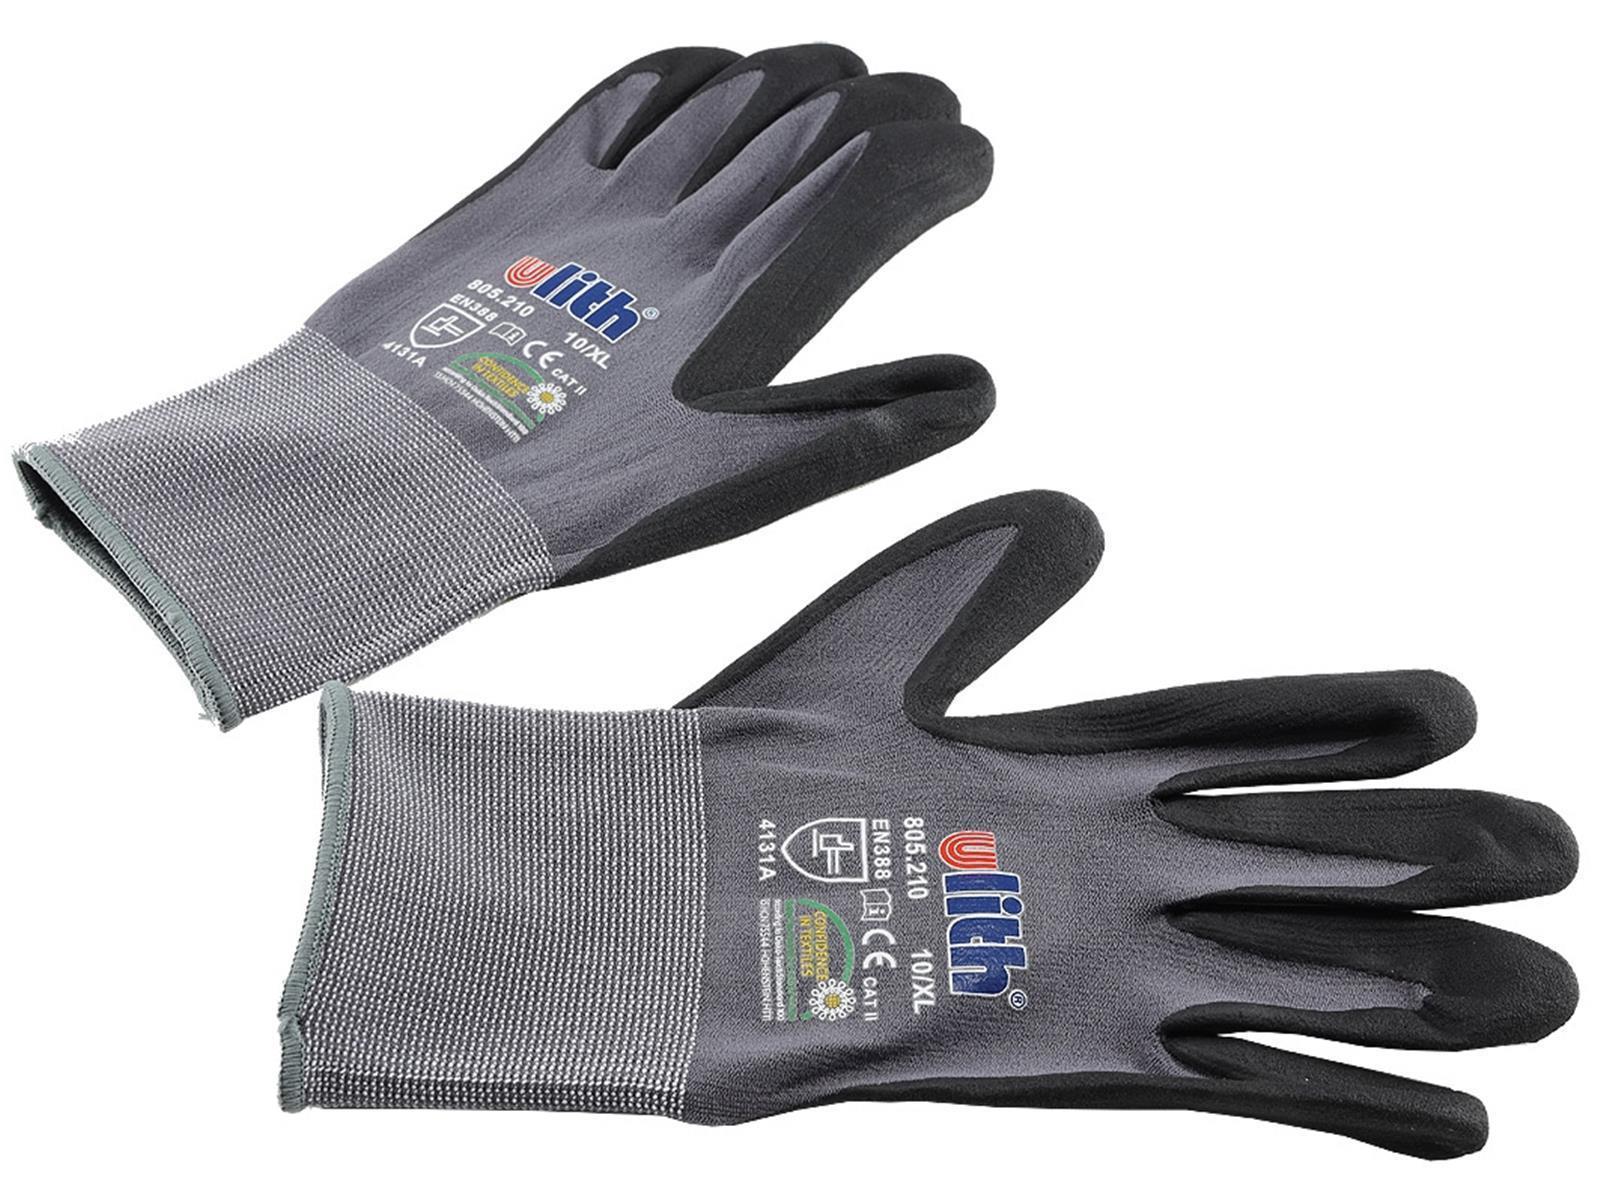 Profi Arbeits-Handschuhe mit Kautschuk-Beschichtung, Ökotex 100, Größe 9